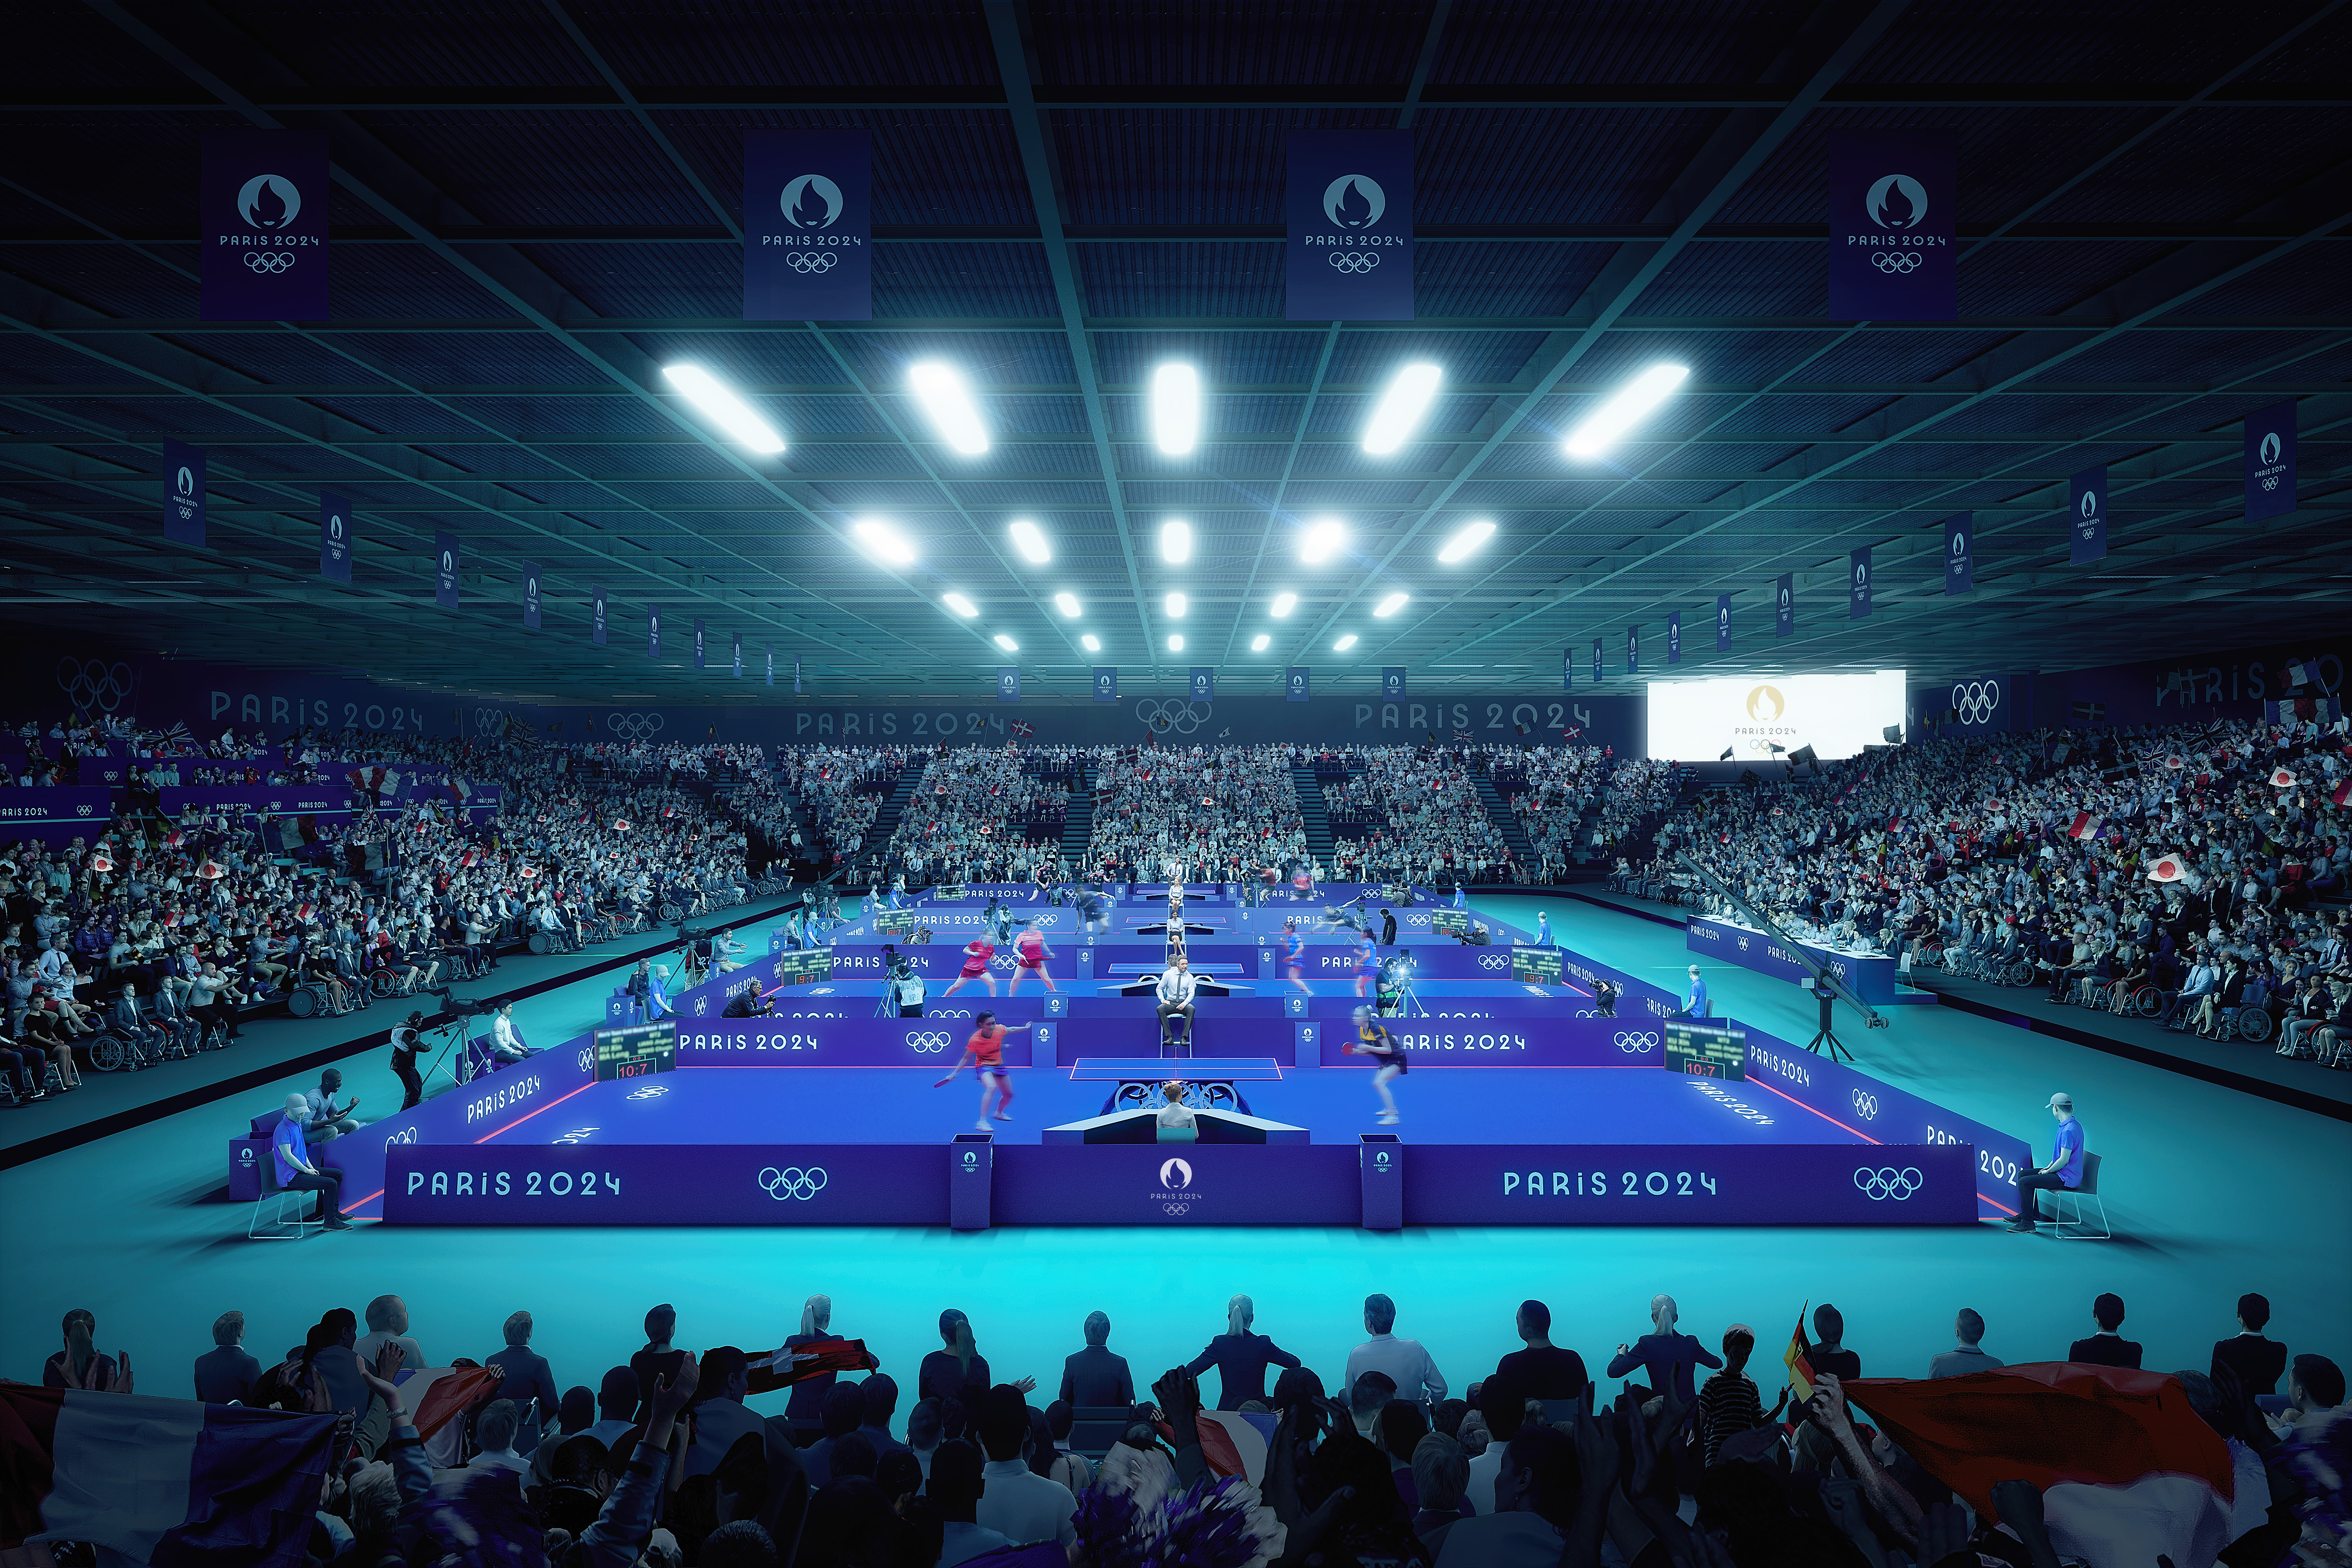 Les détenteurs de places, comme ici à l'Arena Paris Sud dans le XVe arrondissement de Paris pour le tennis de table, pourront à partir du 15 mai avoir accès à une application pour obtenir, stocker et revendre leurs billets. Paris 2024